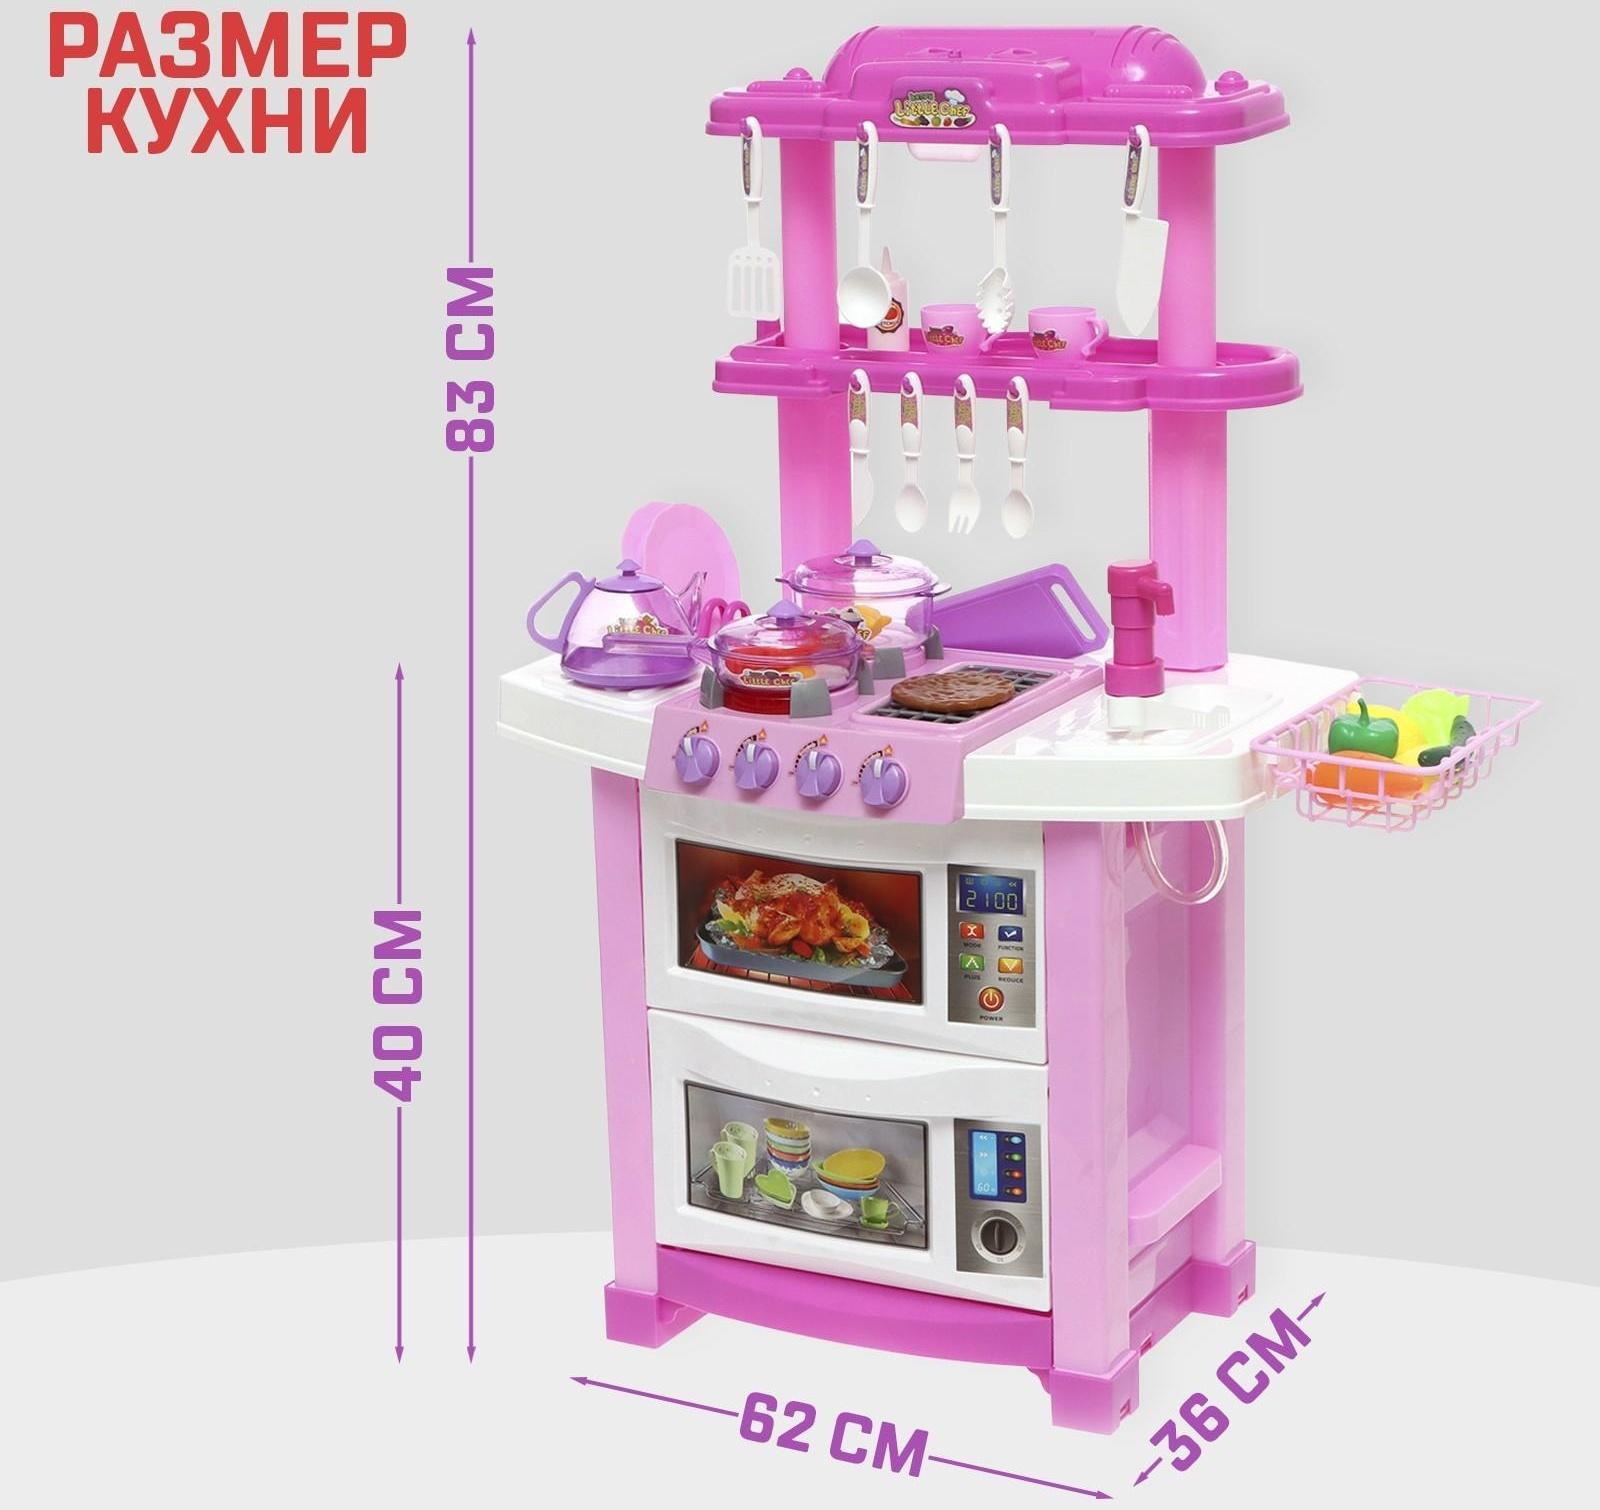 Игровой набор «Лучшая кухня» с аксессуарами, световые и звуковые эффекты, бежит вода из крана, 33 предмета